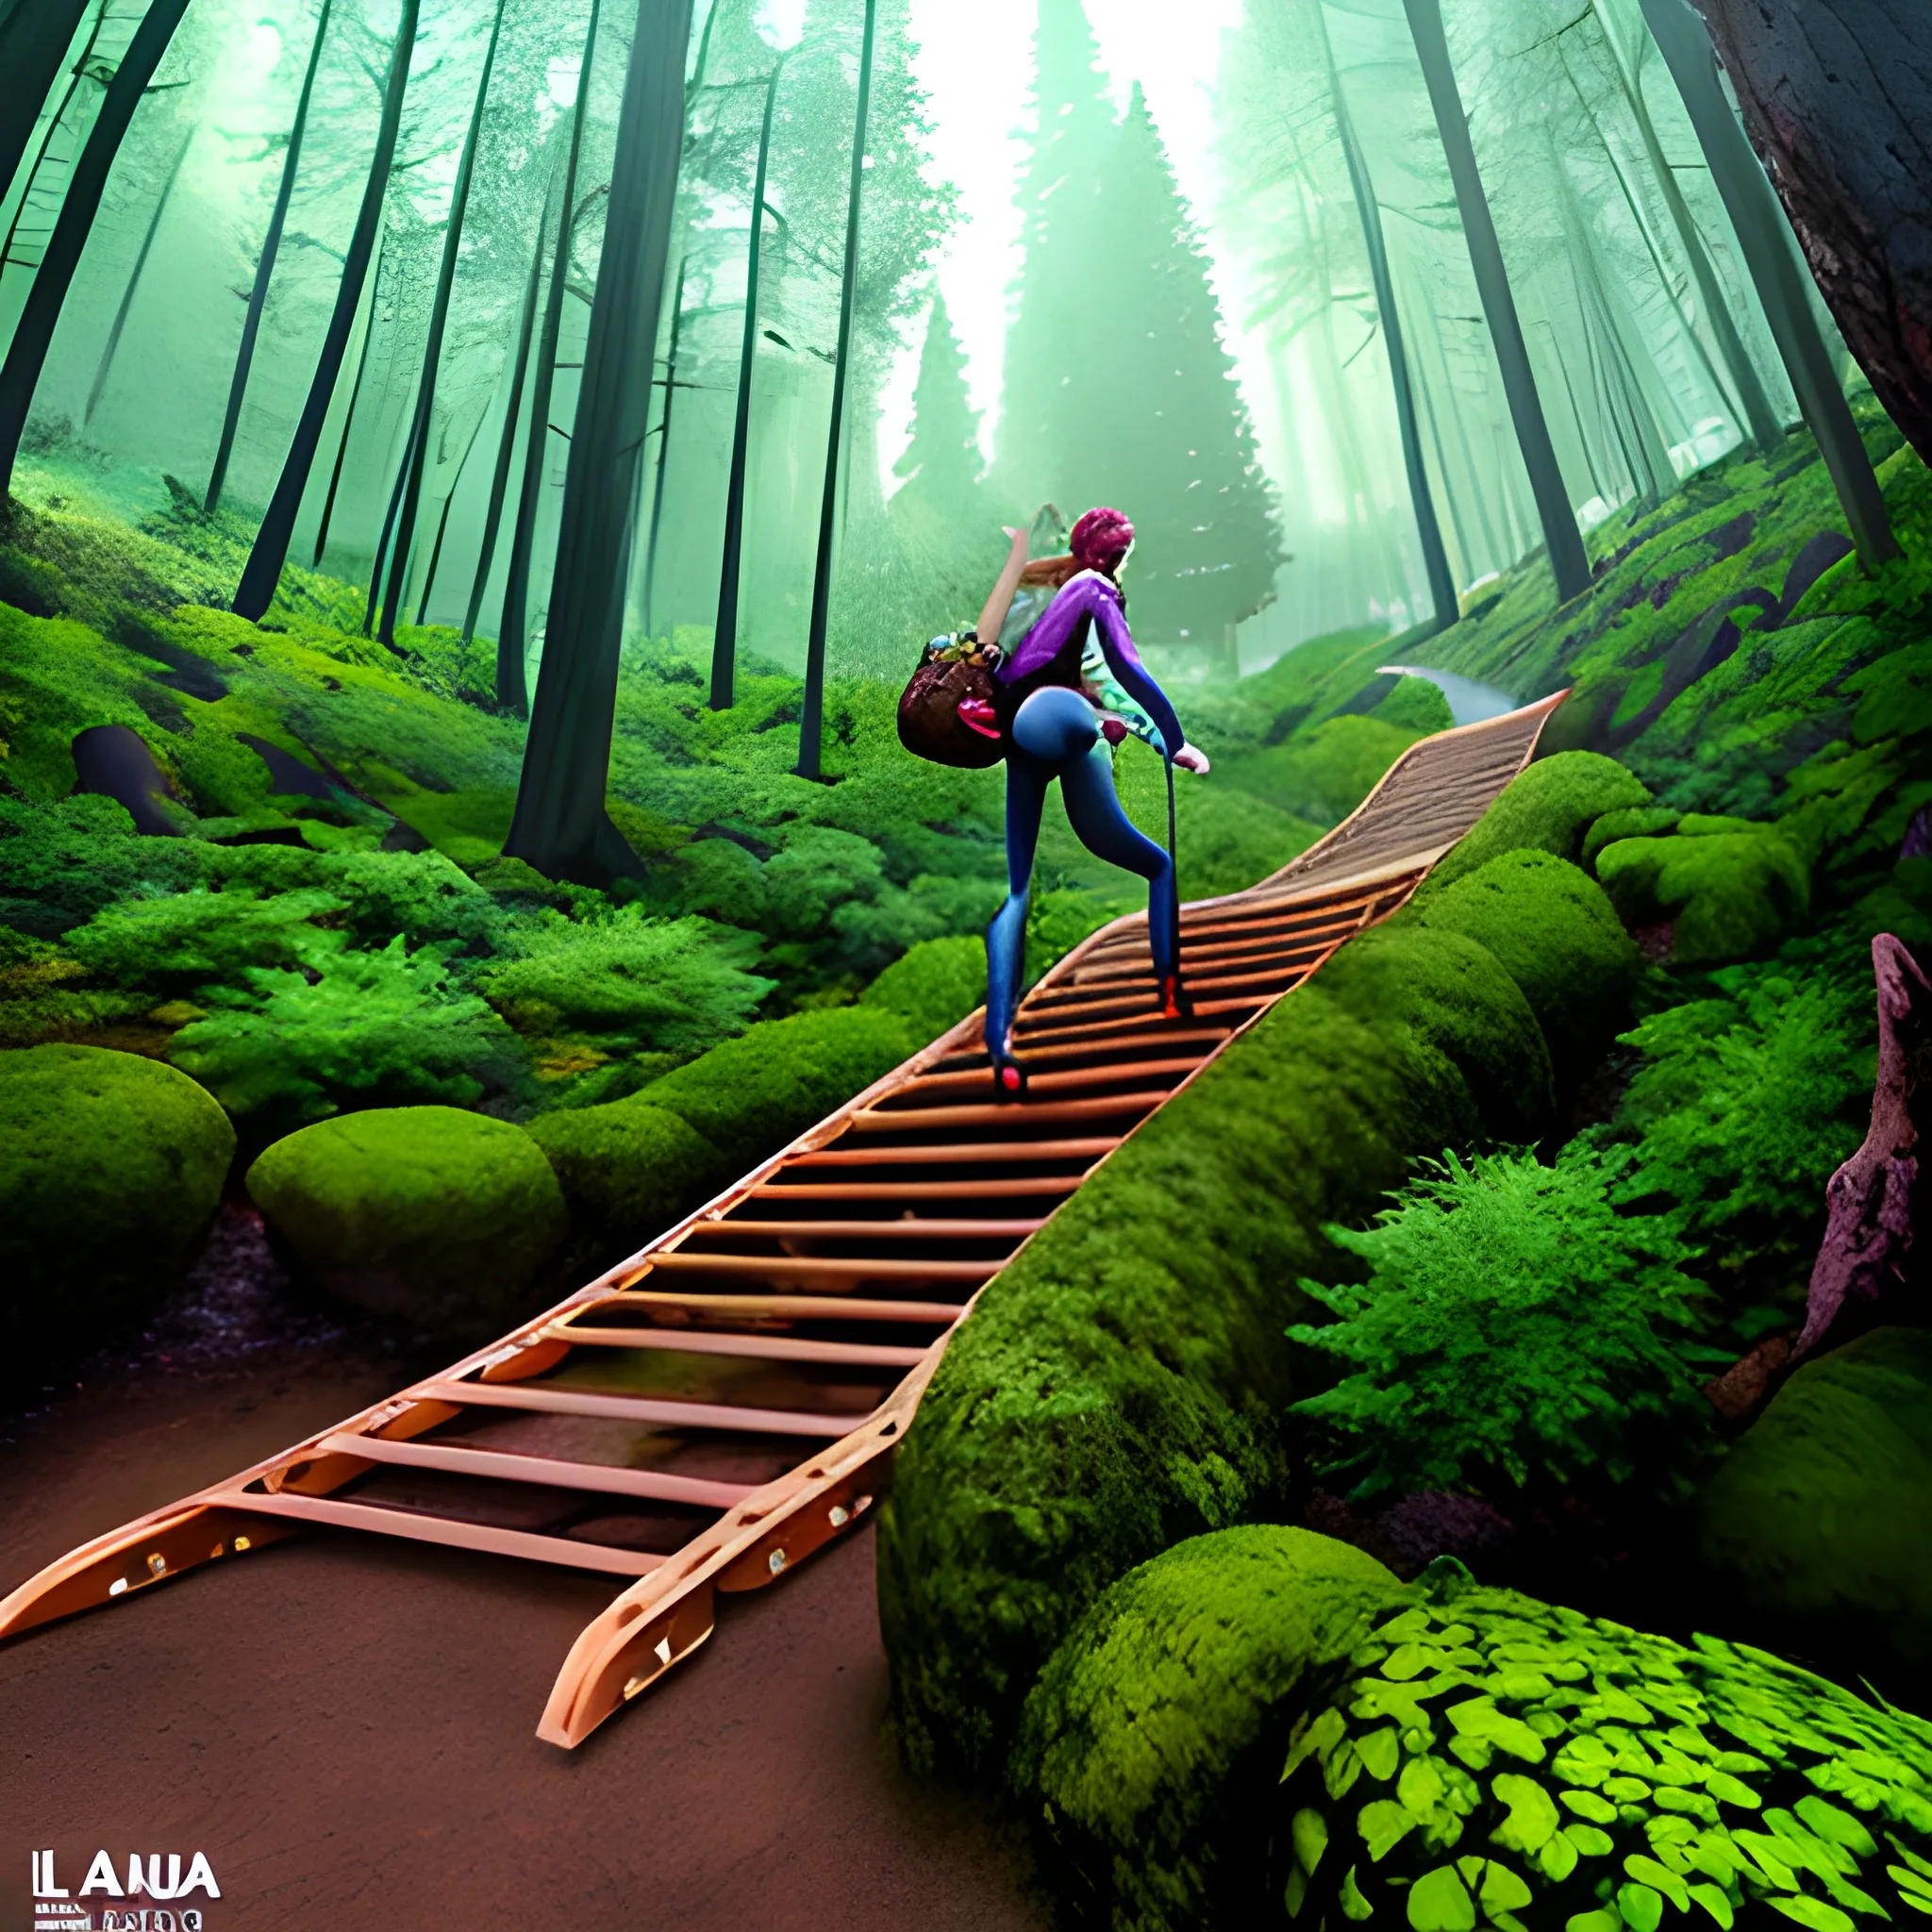 Estilo pixar, una niña escalando una montaña para llegar a un bosque encantado